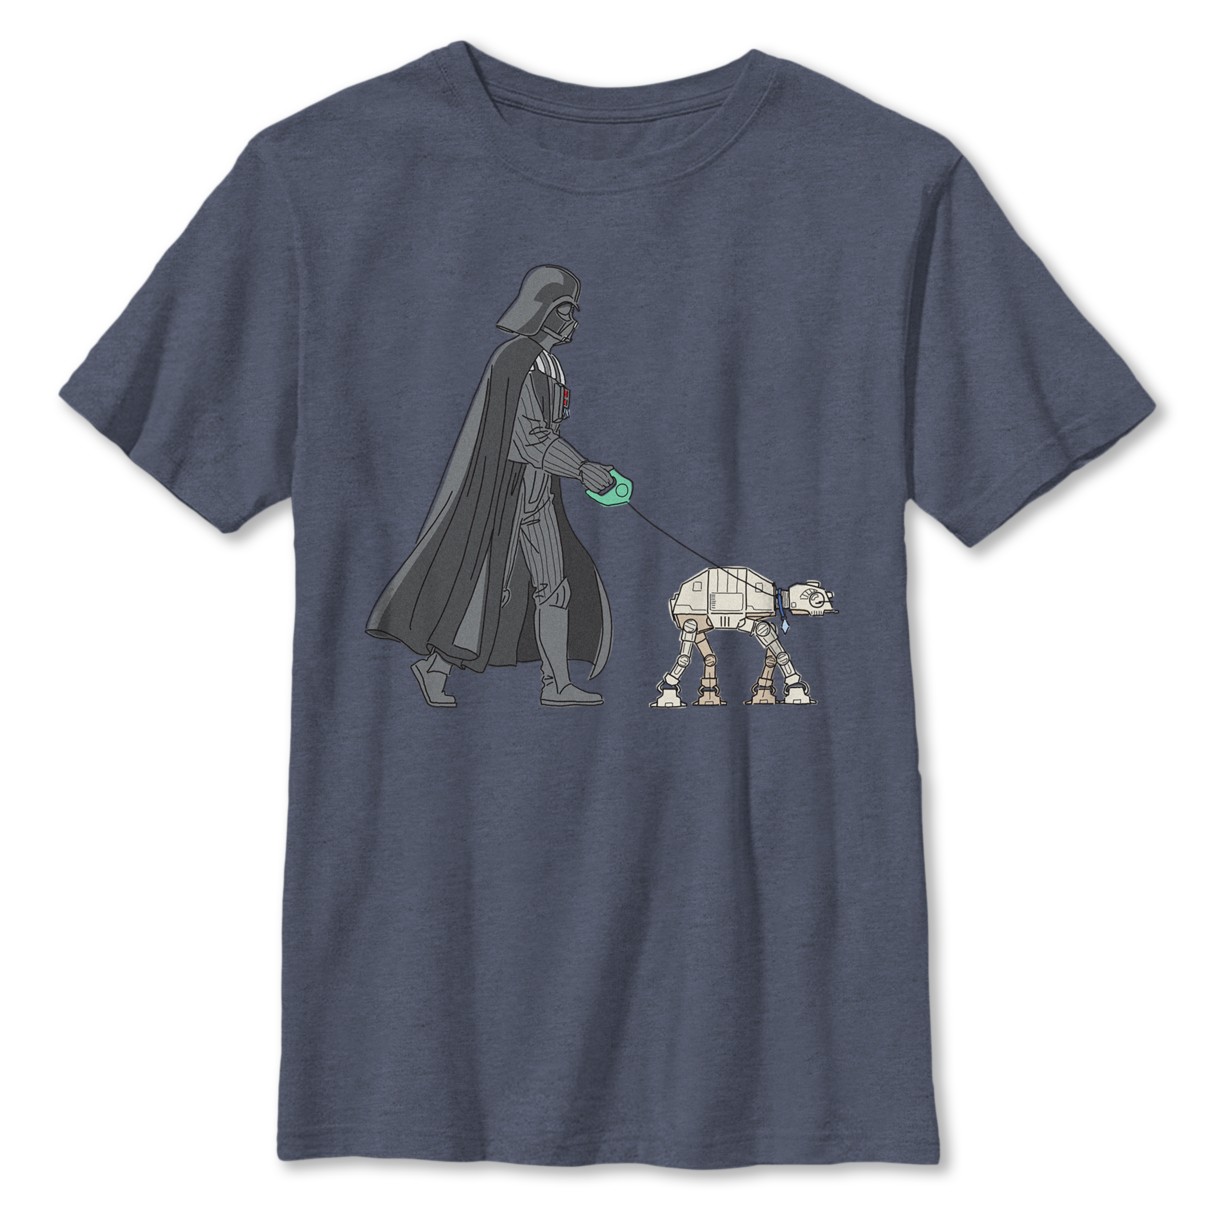 Darth Vader and AT-AT T-Shirt for Kids – Star Wars